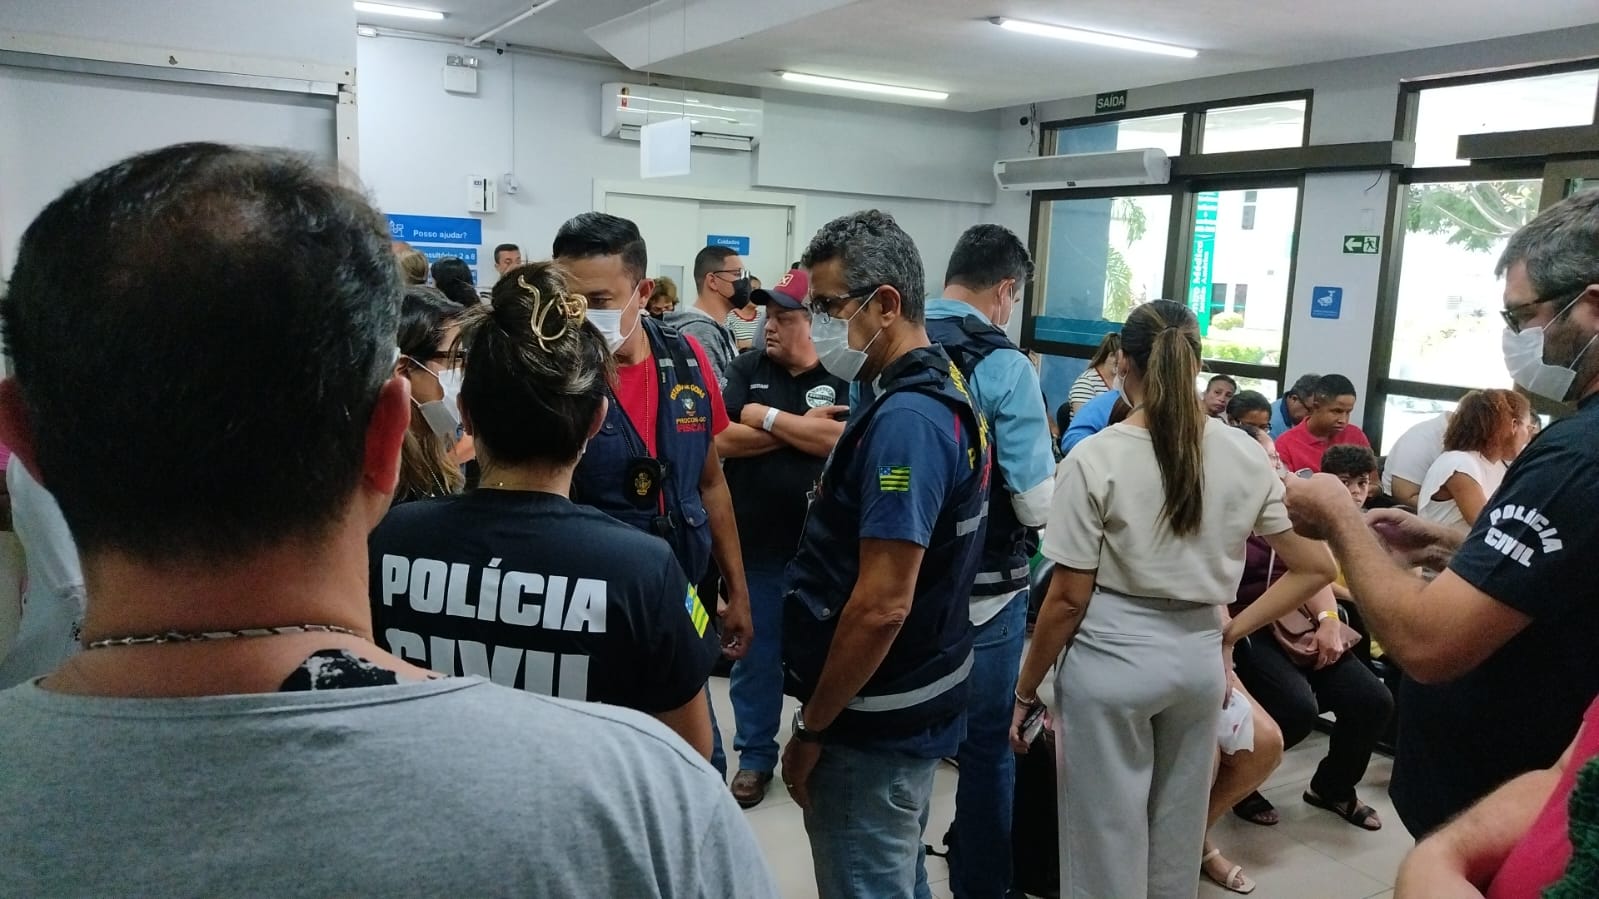 Autoridades do Procon Goiás e Decon inspecionam o hospital Jardim América durante operação de fiscalização nesta segunda-feira